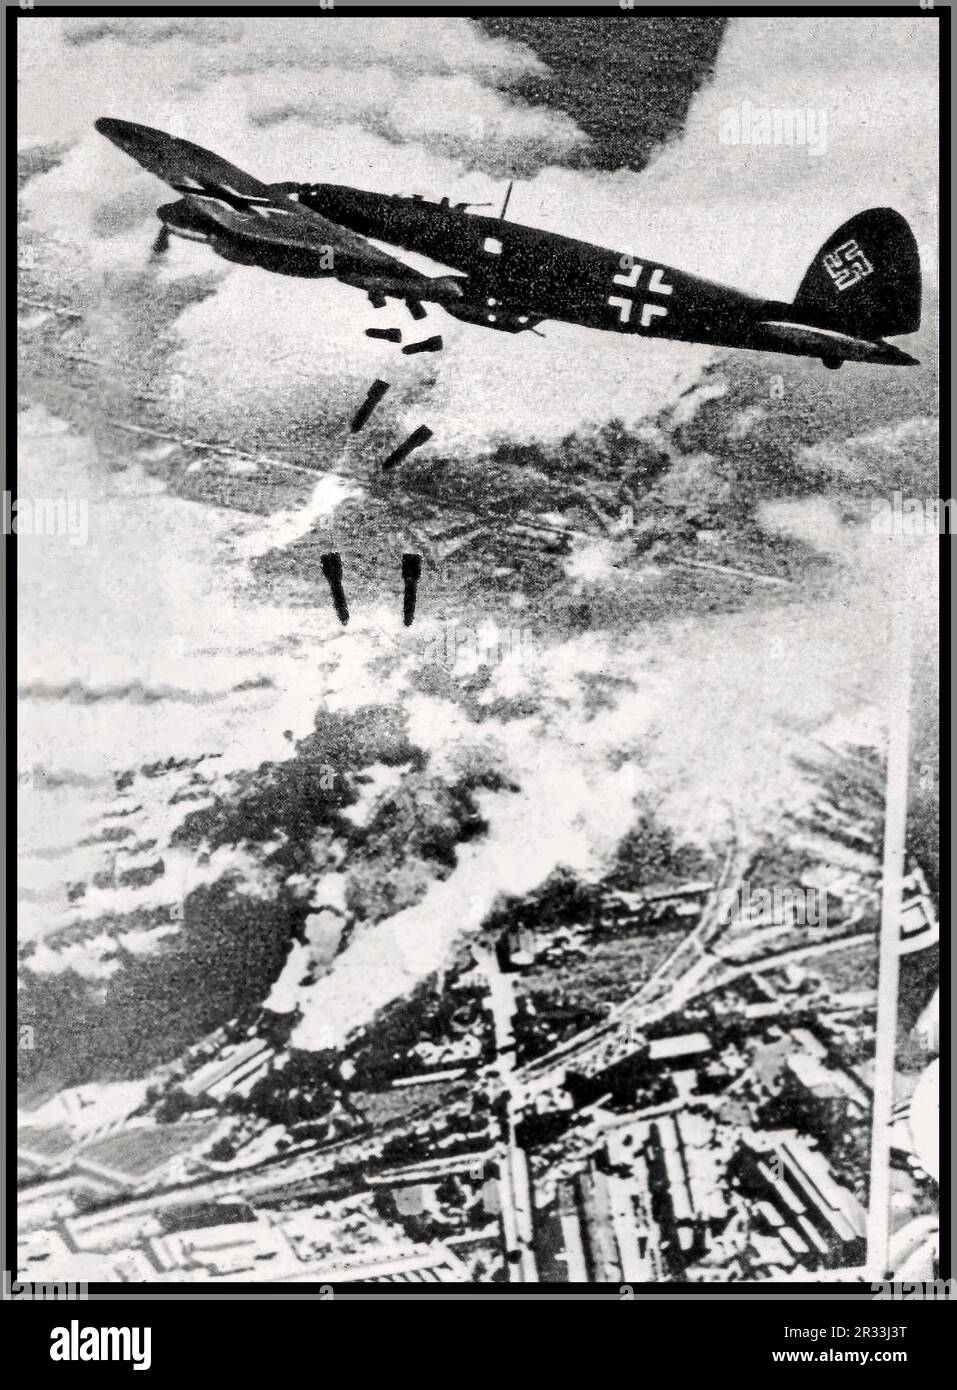 ATTENTAT À LA BOMBE DE VARSOVIE WW2 Allemagne nazie Luftwaffe Heinkel He 111 avions bombardant Varsovie, Pologne en 1939. Occupation nazie Seconde Guerre mondiale Banque D'Images